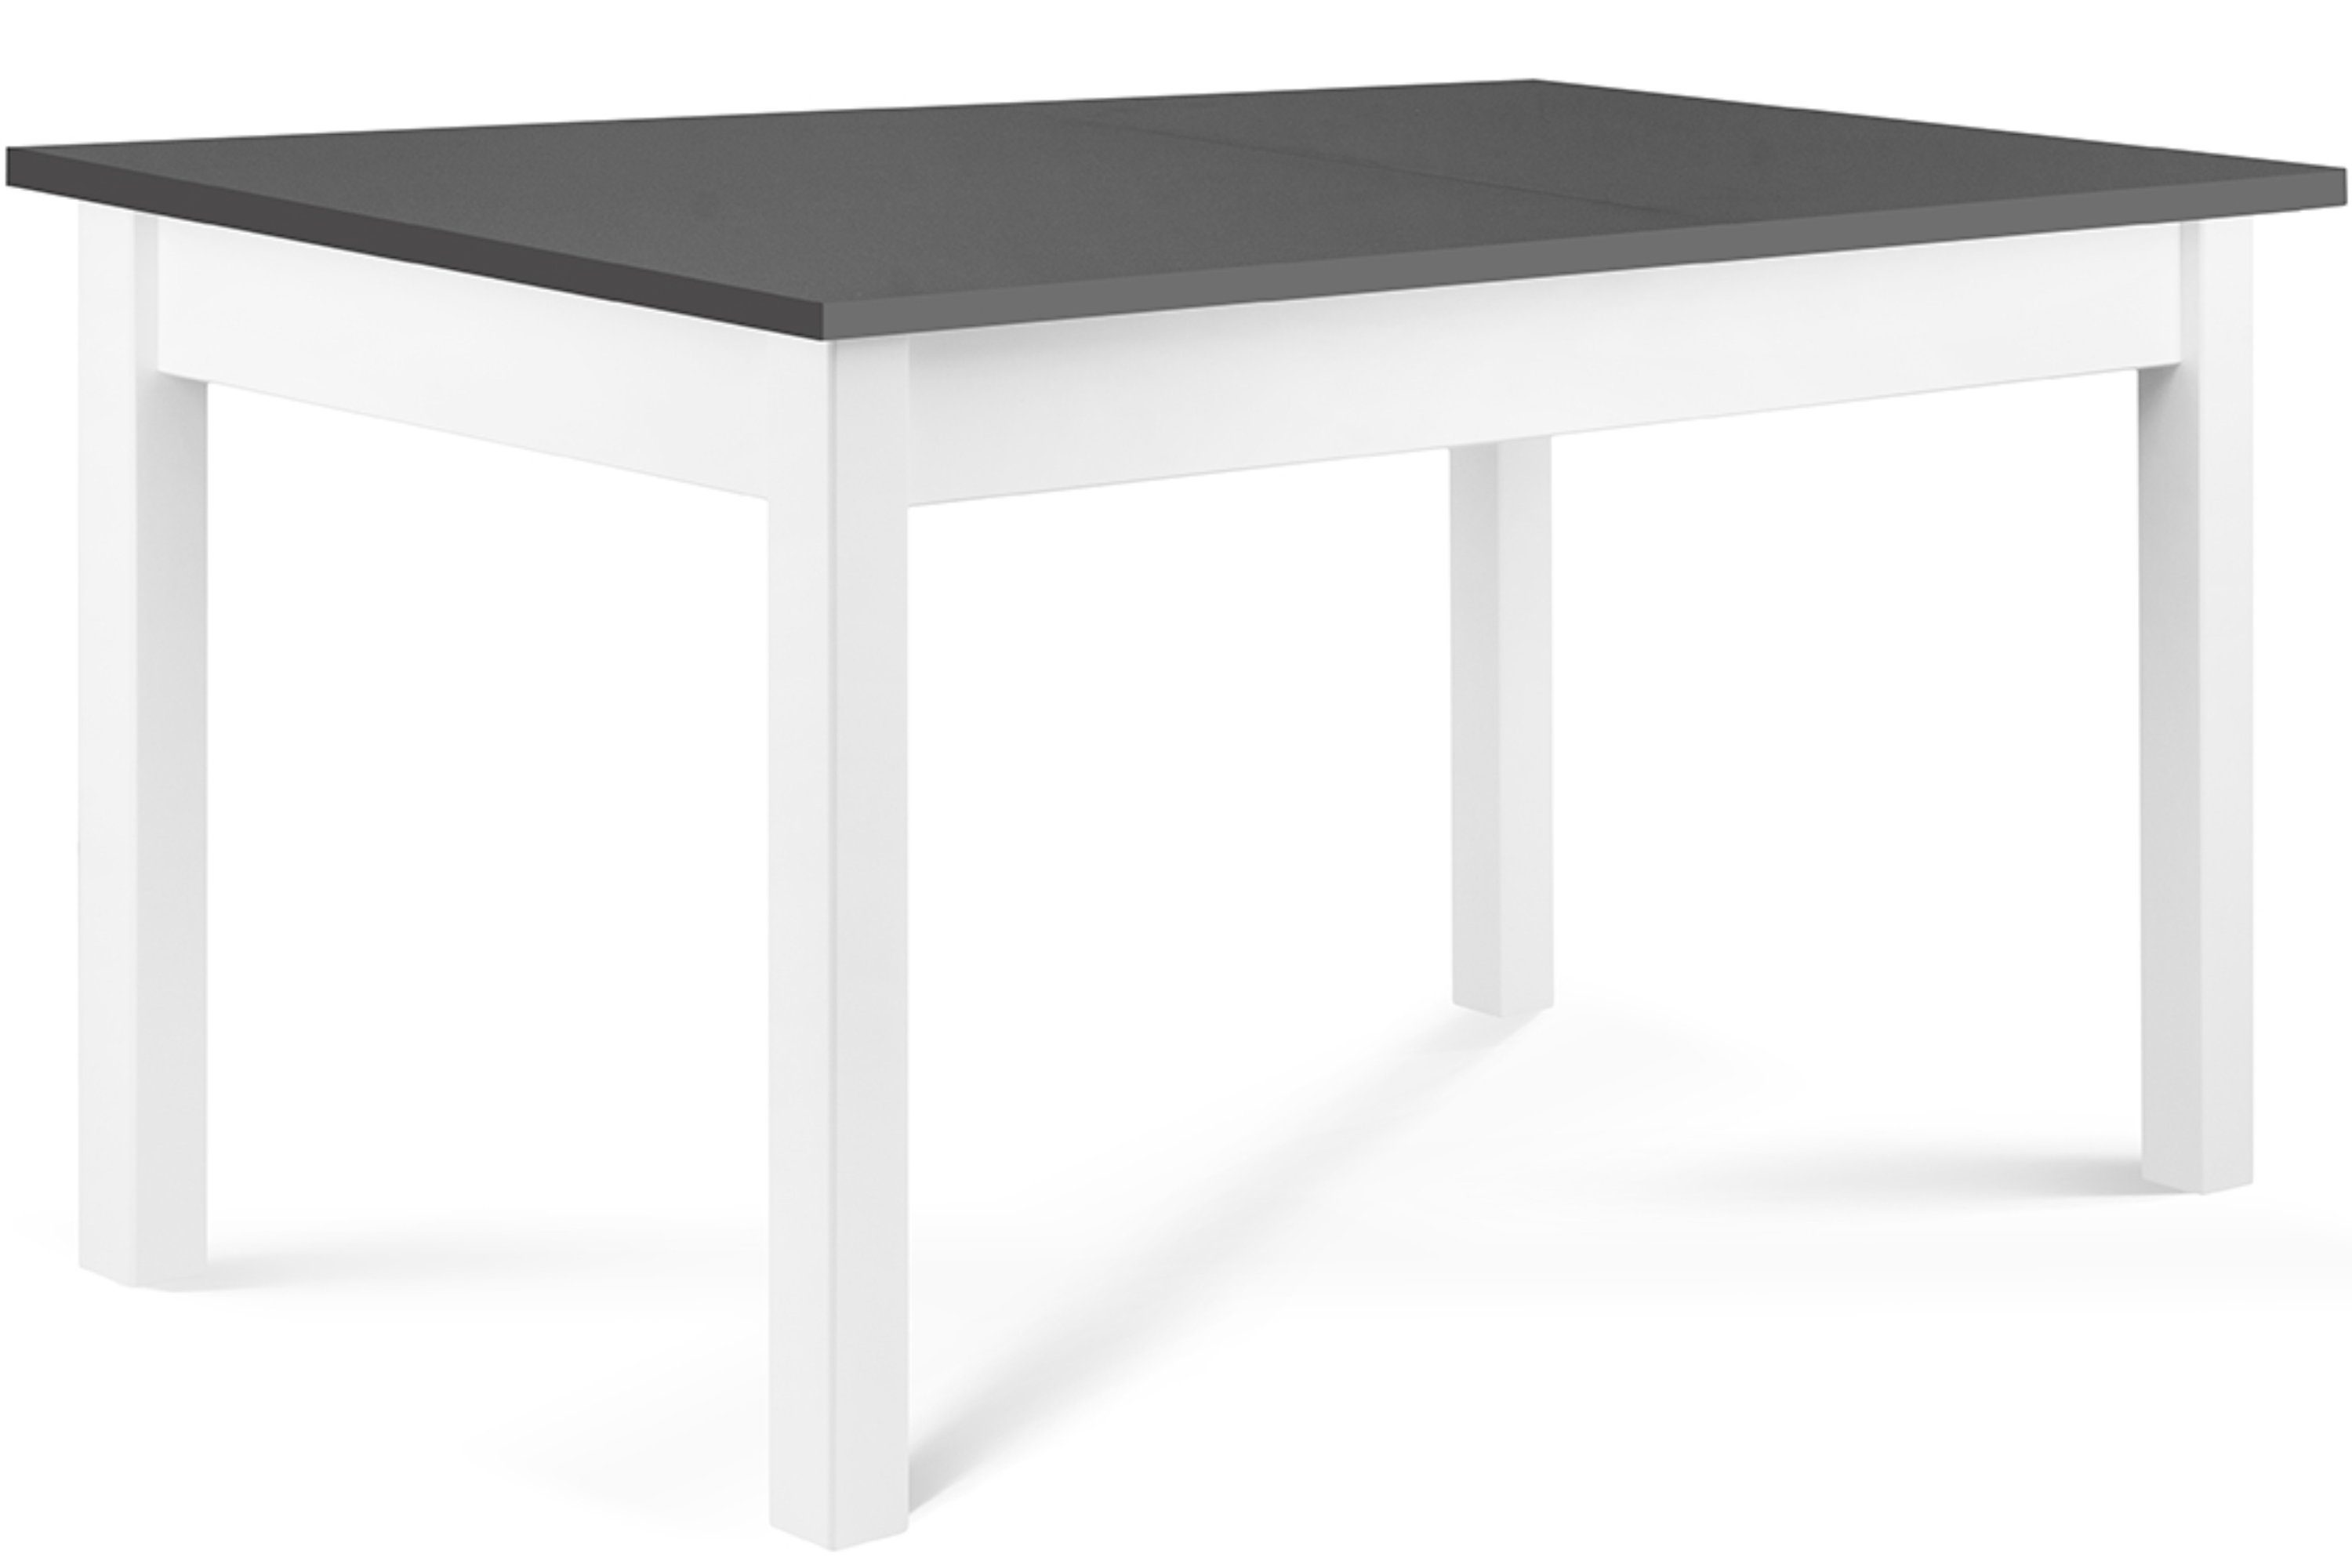 Konsimo Esstisch CENARE Esszimmertisch Küchentisch 140x80cm, ausziehbar bis 180cm, rechteckig weiß / grau | weiß | grau